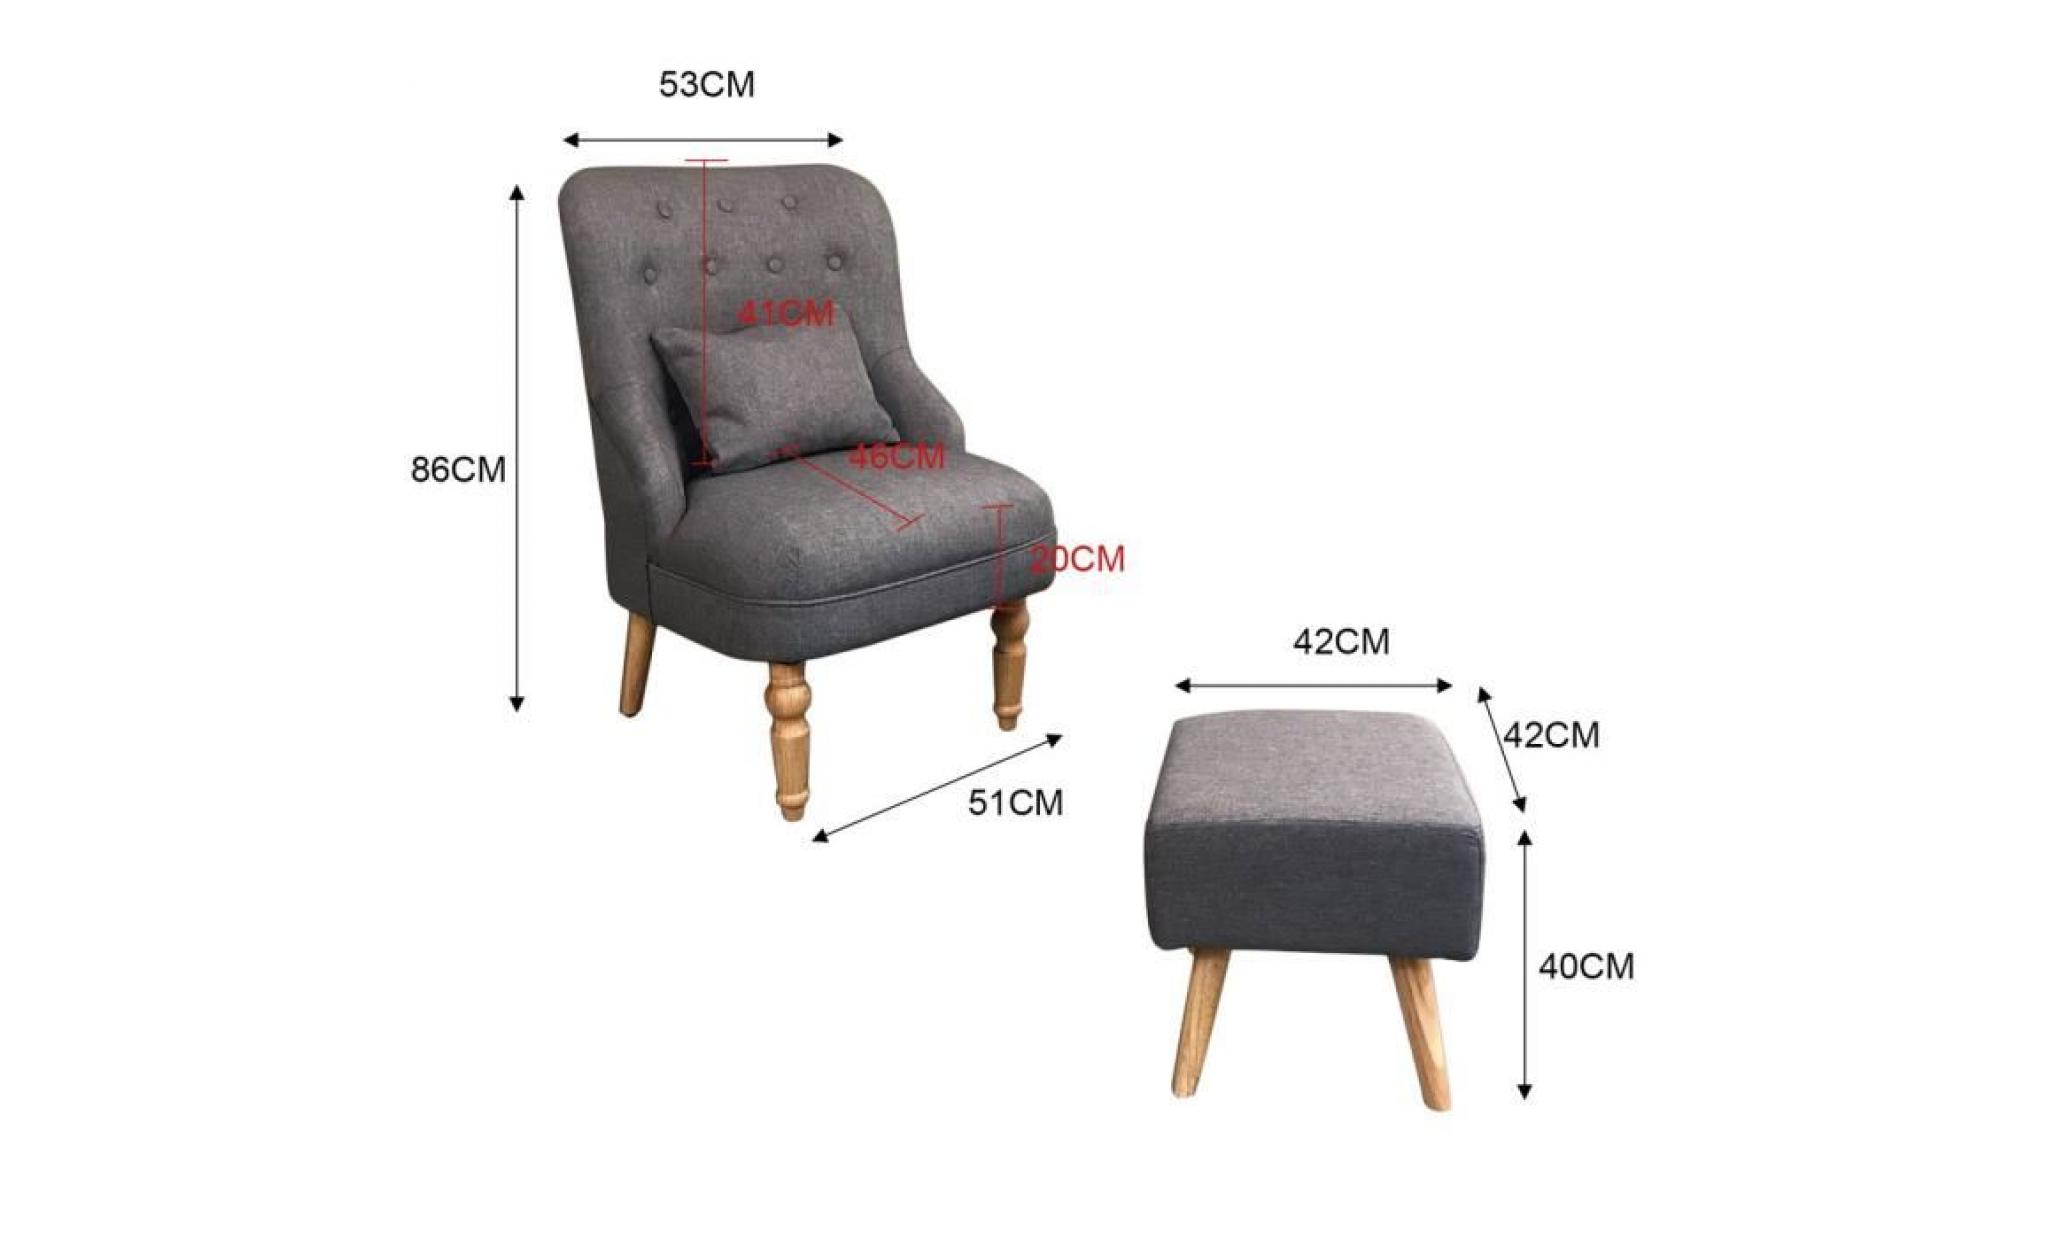 divan classique single place sofa avec tabouret canapé de style royale fauteuil en tissu gris anthracite pas cher